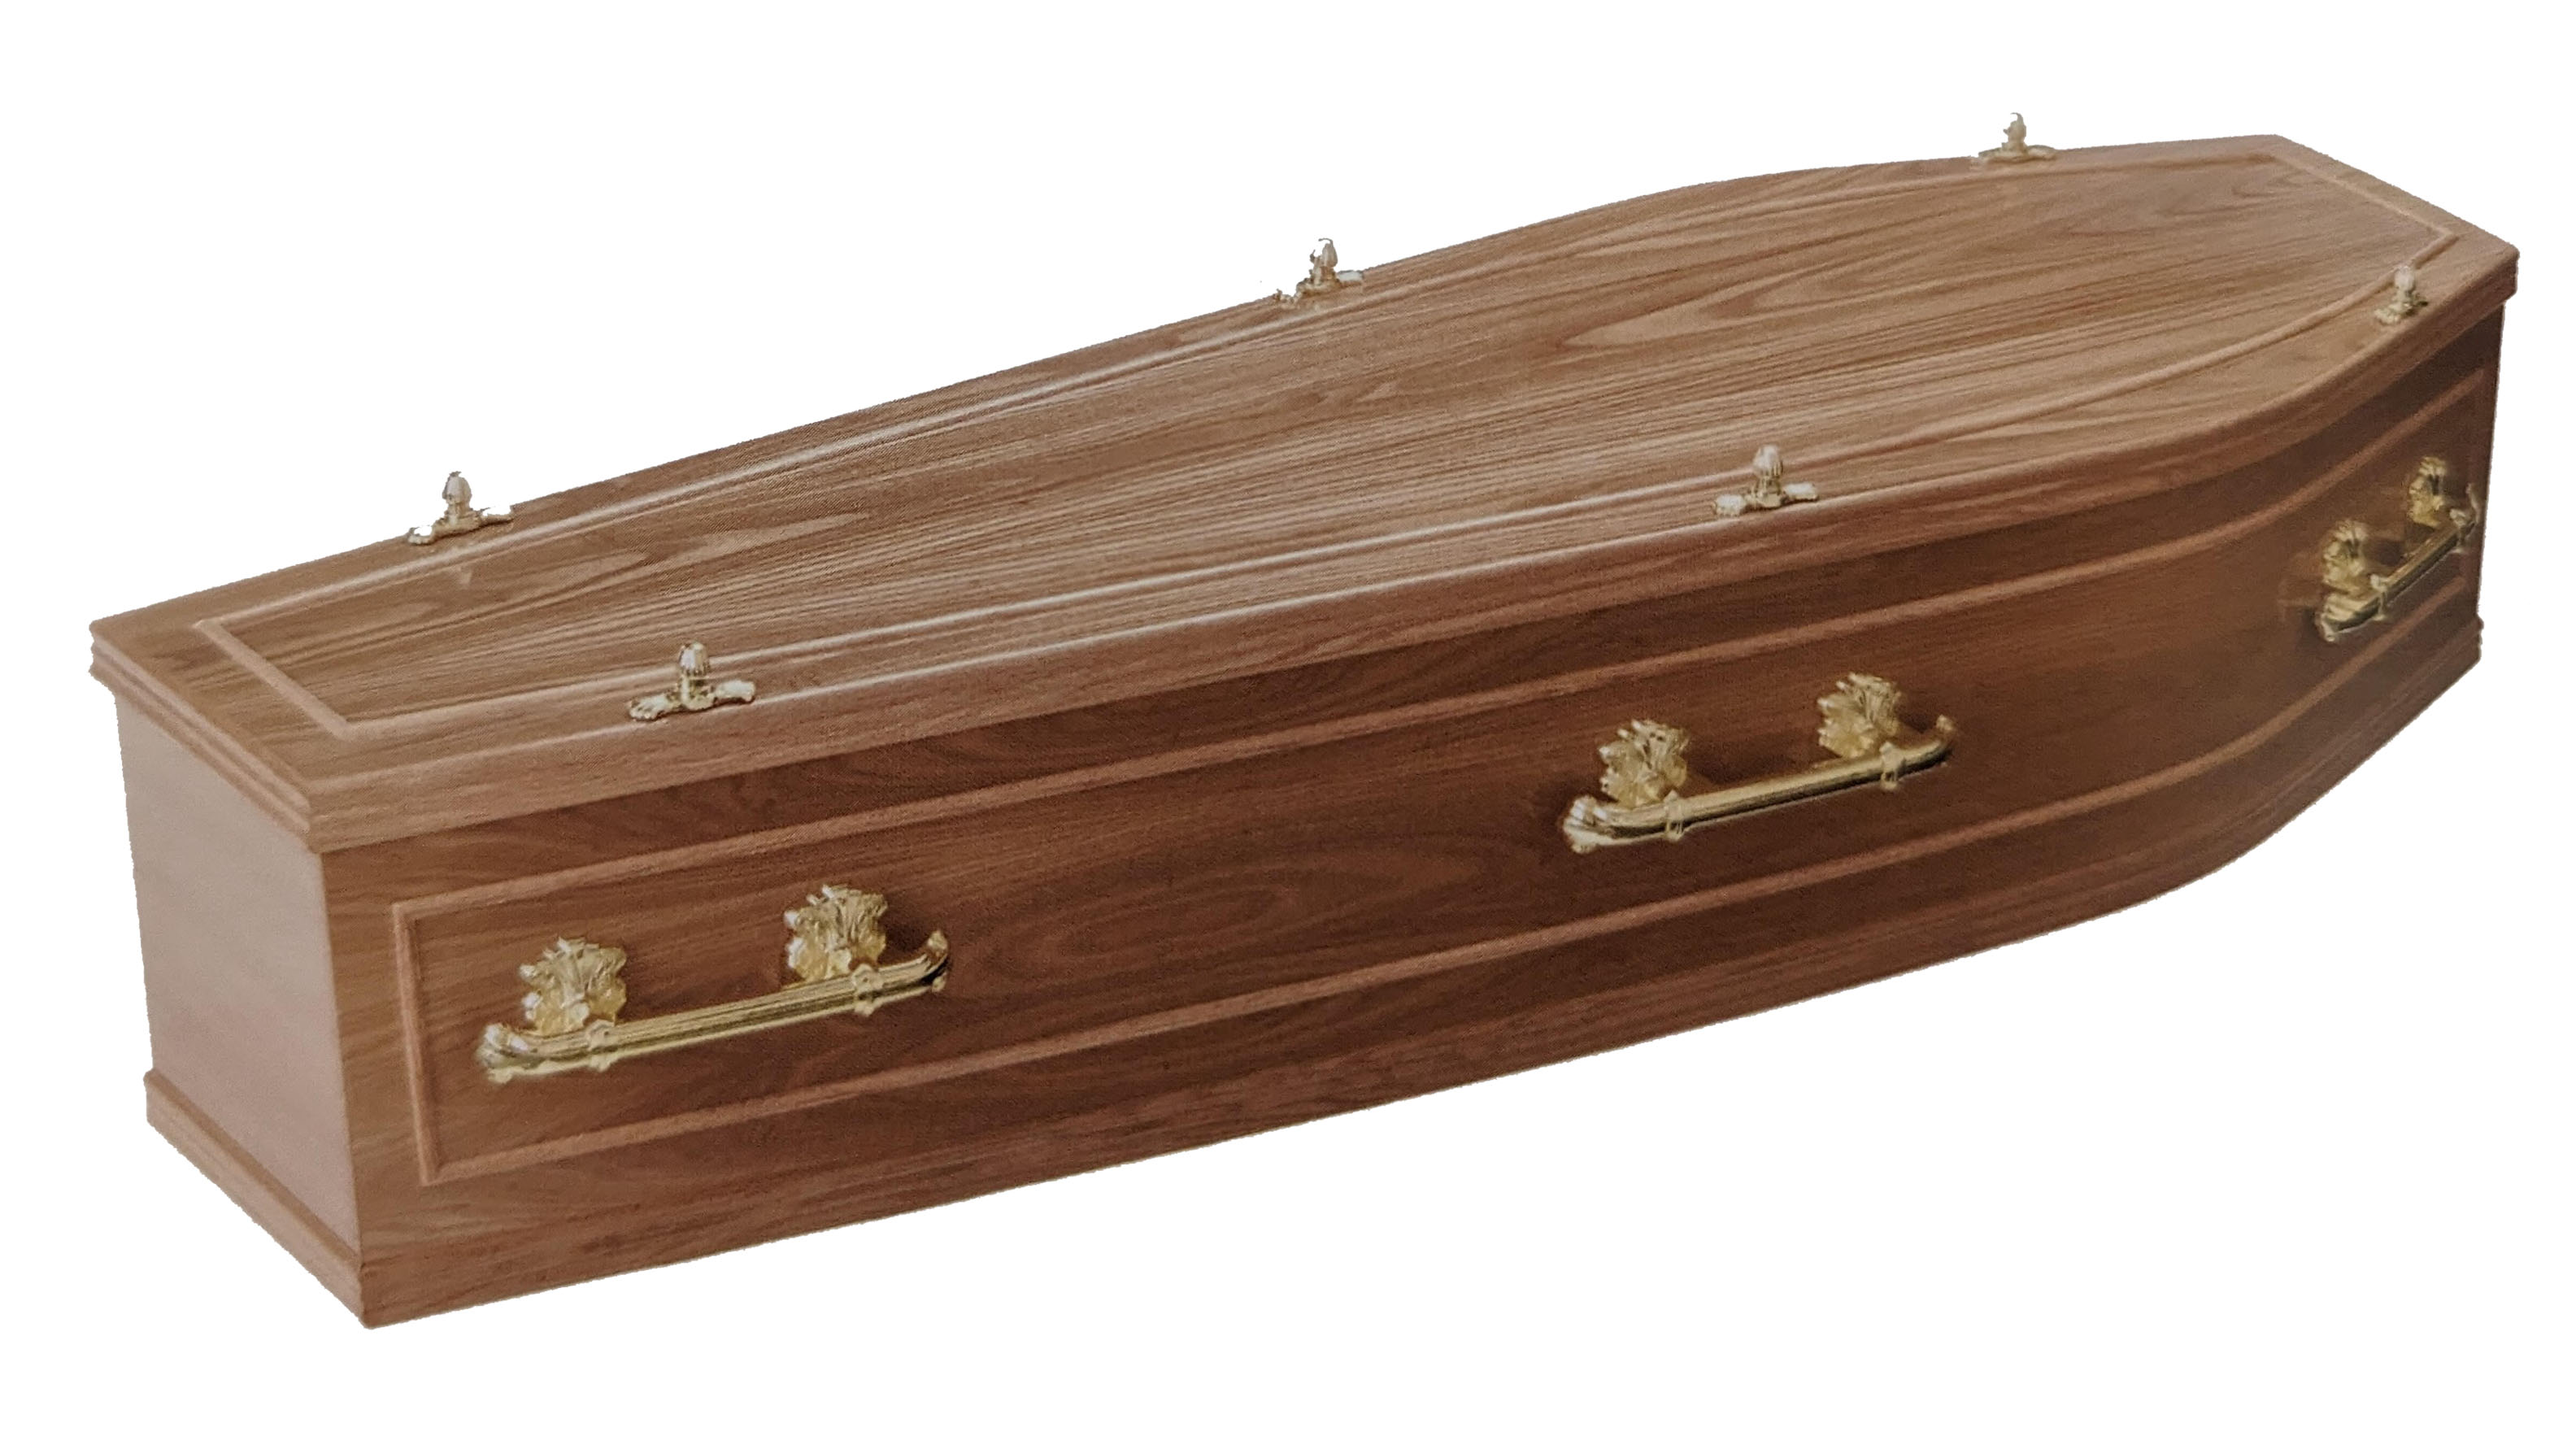 The Kedleston coffin